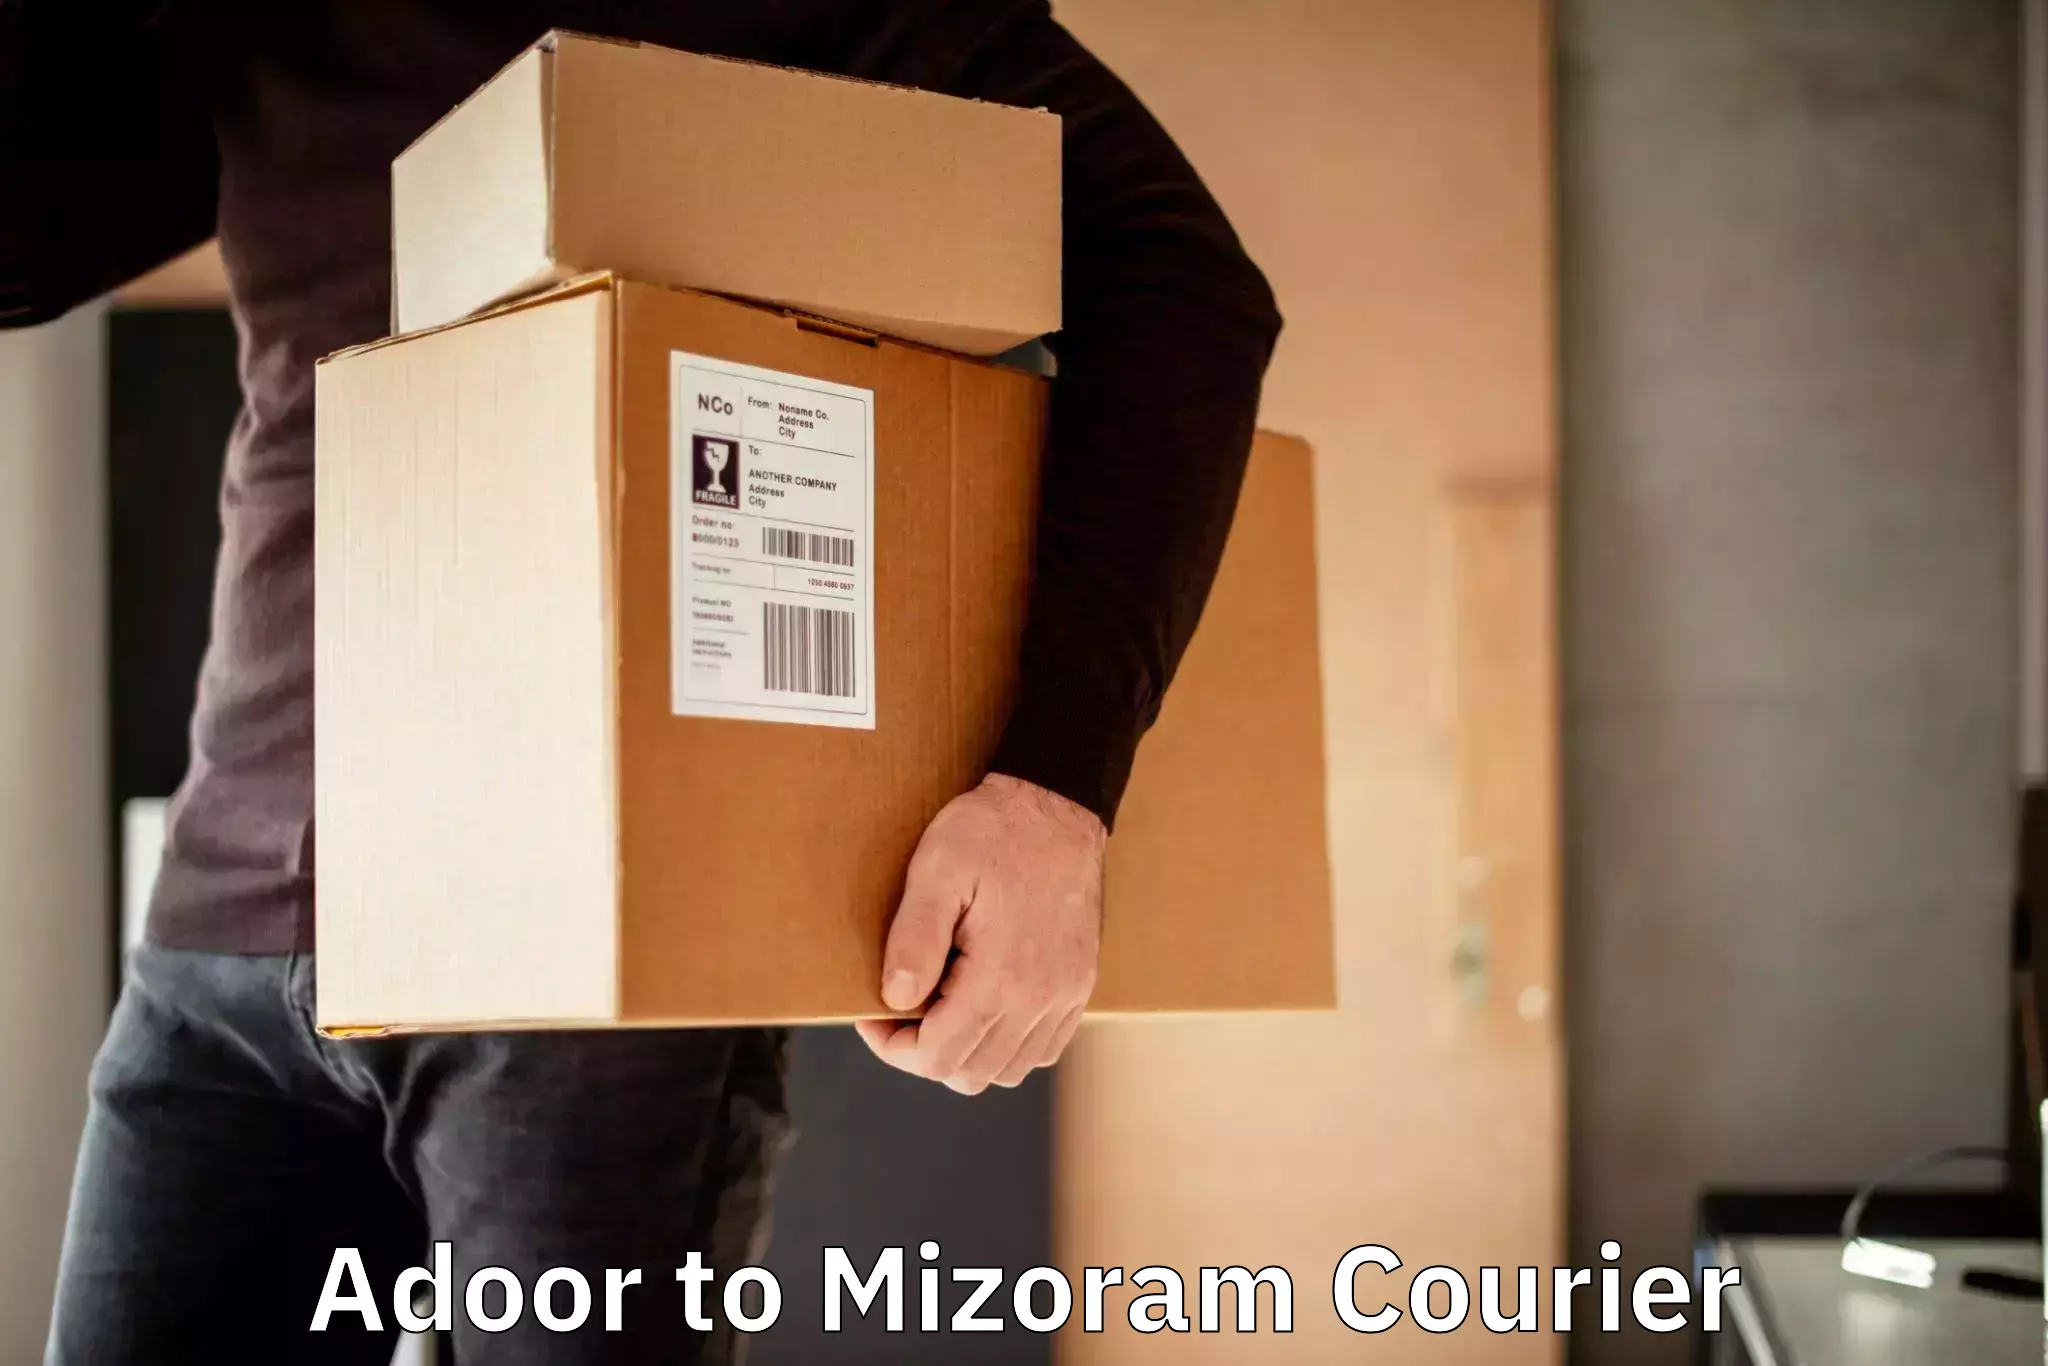 Efficient parcel service Adoor to Mizoram